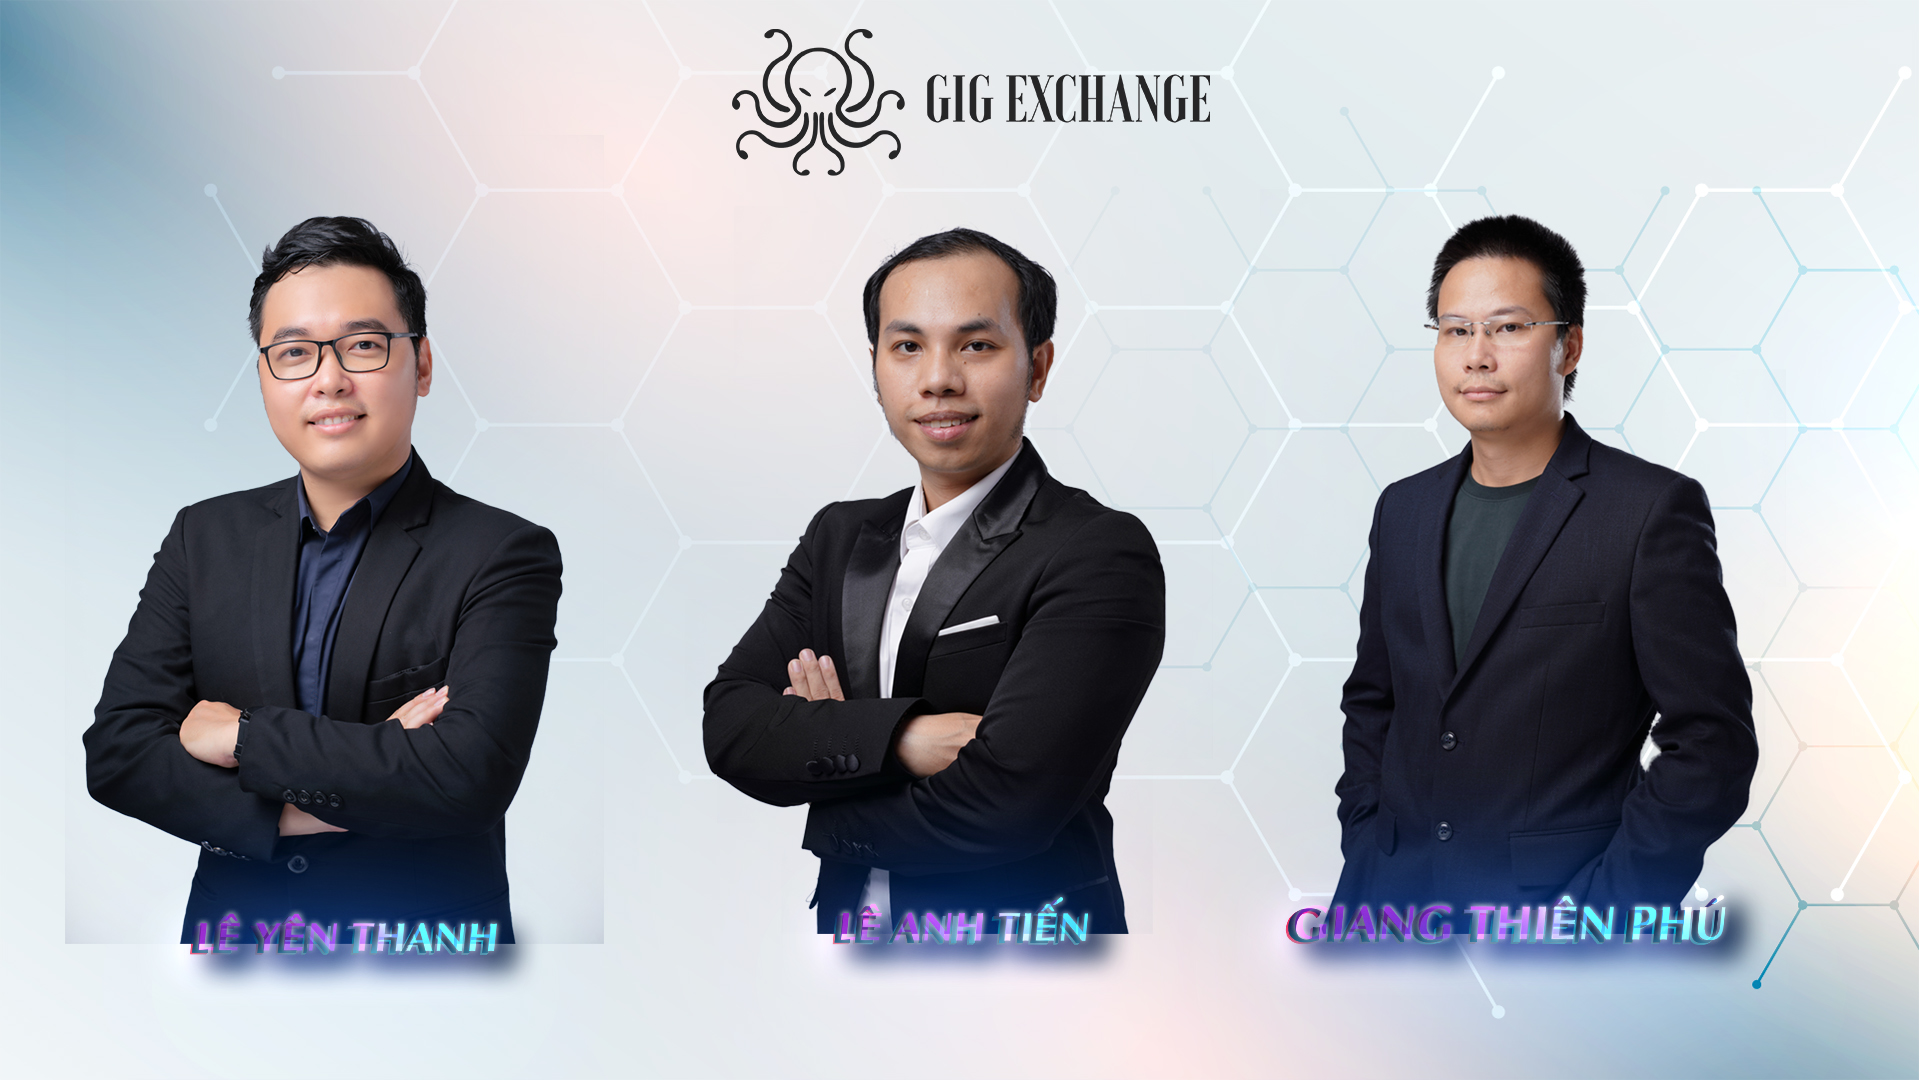 GIGEX chuẩn bị chinh phục các cột mốc mới sau khi ban lãnh đạo GIG Capital công bố thành viên